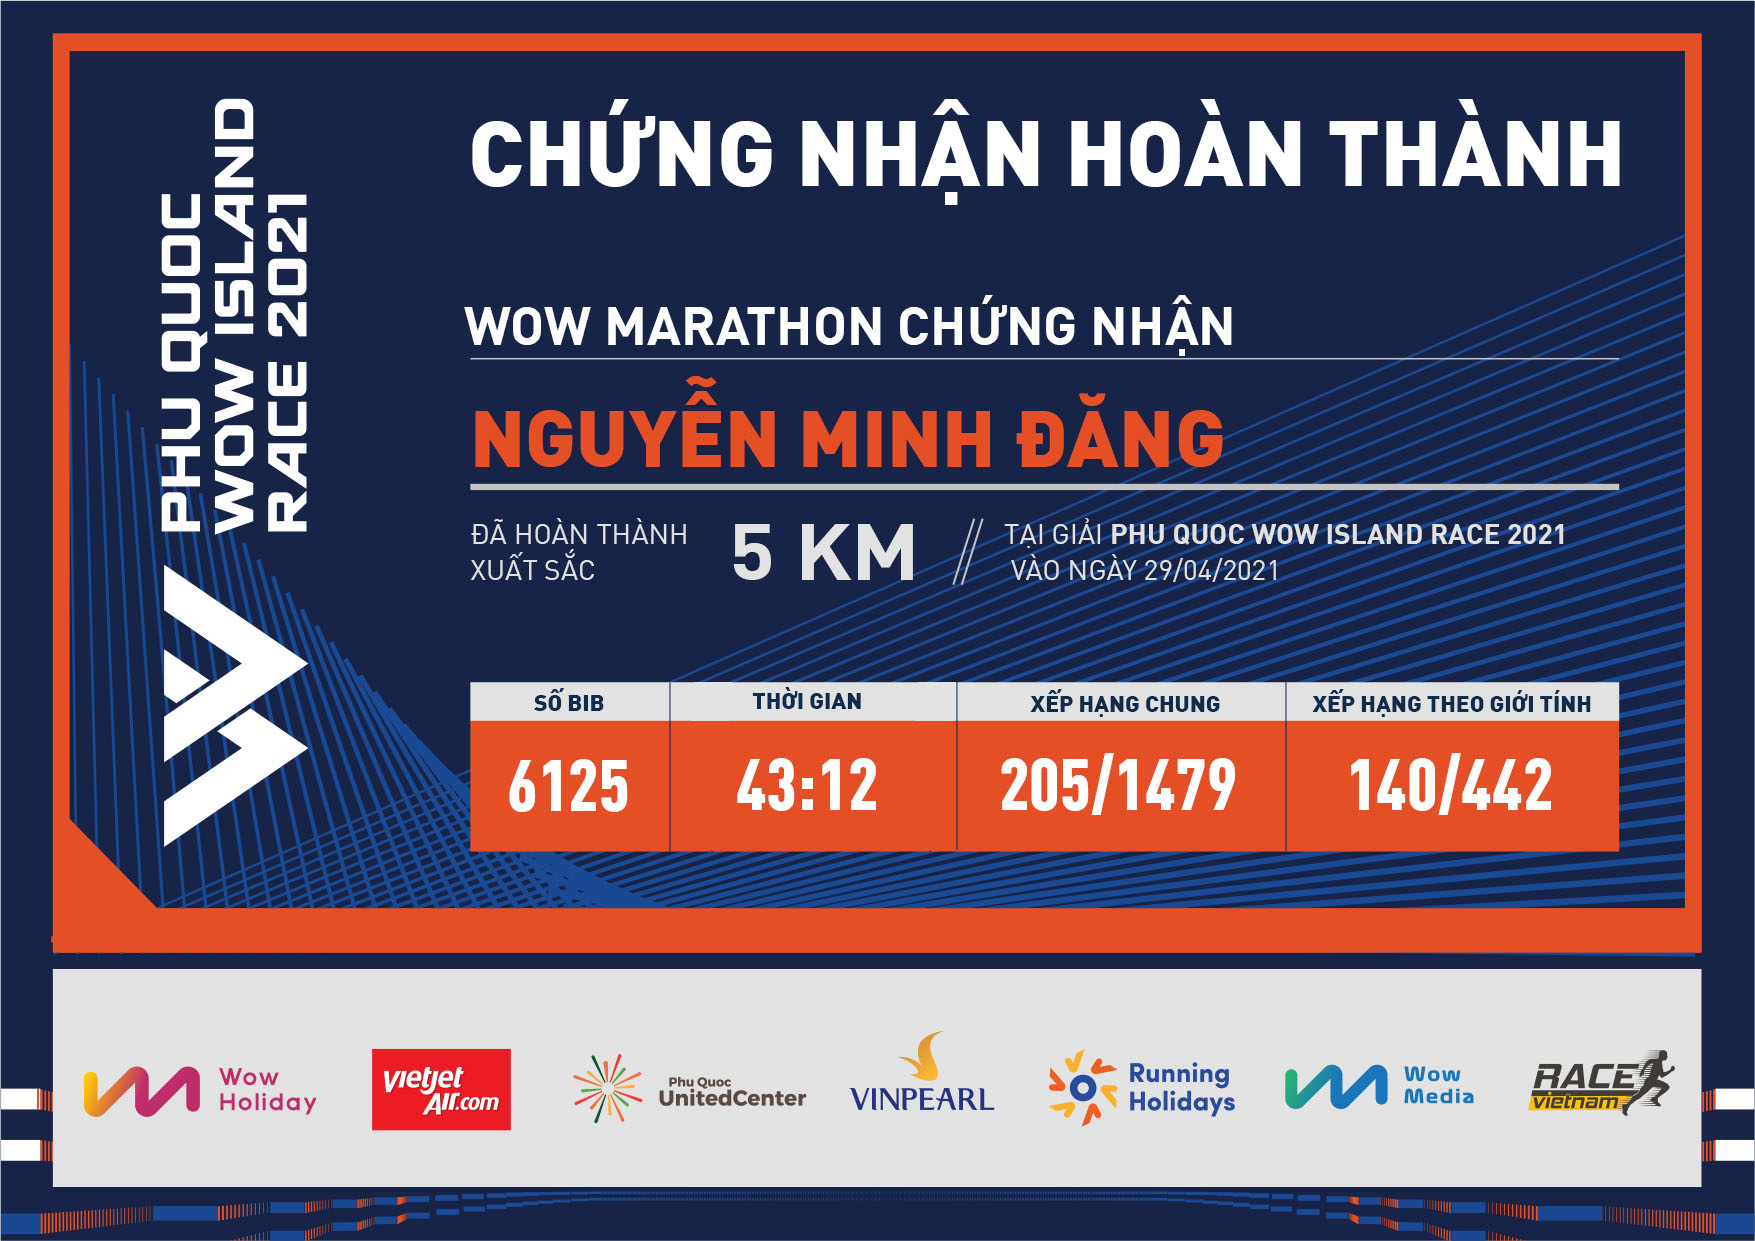 6125 - Nguyễn Minh Đăng